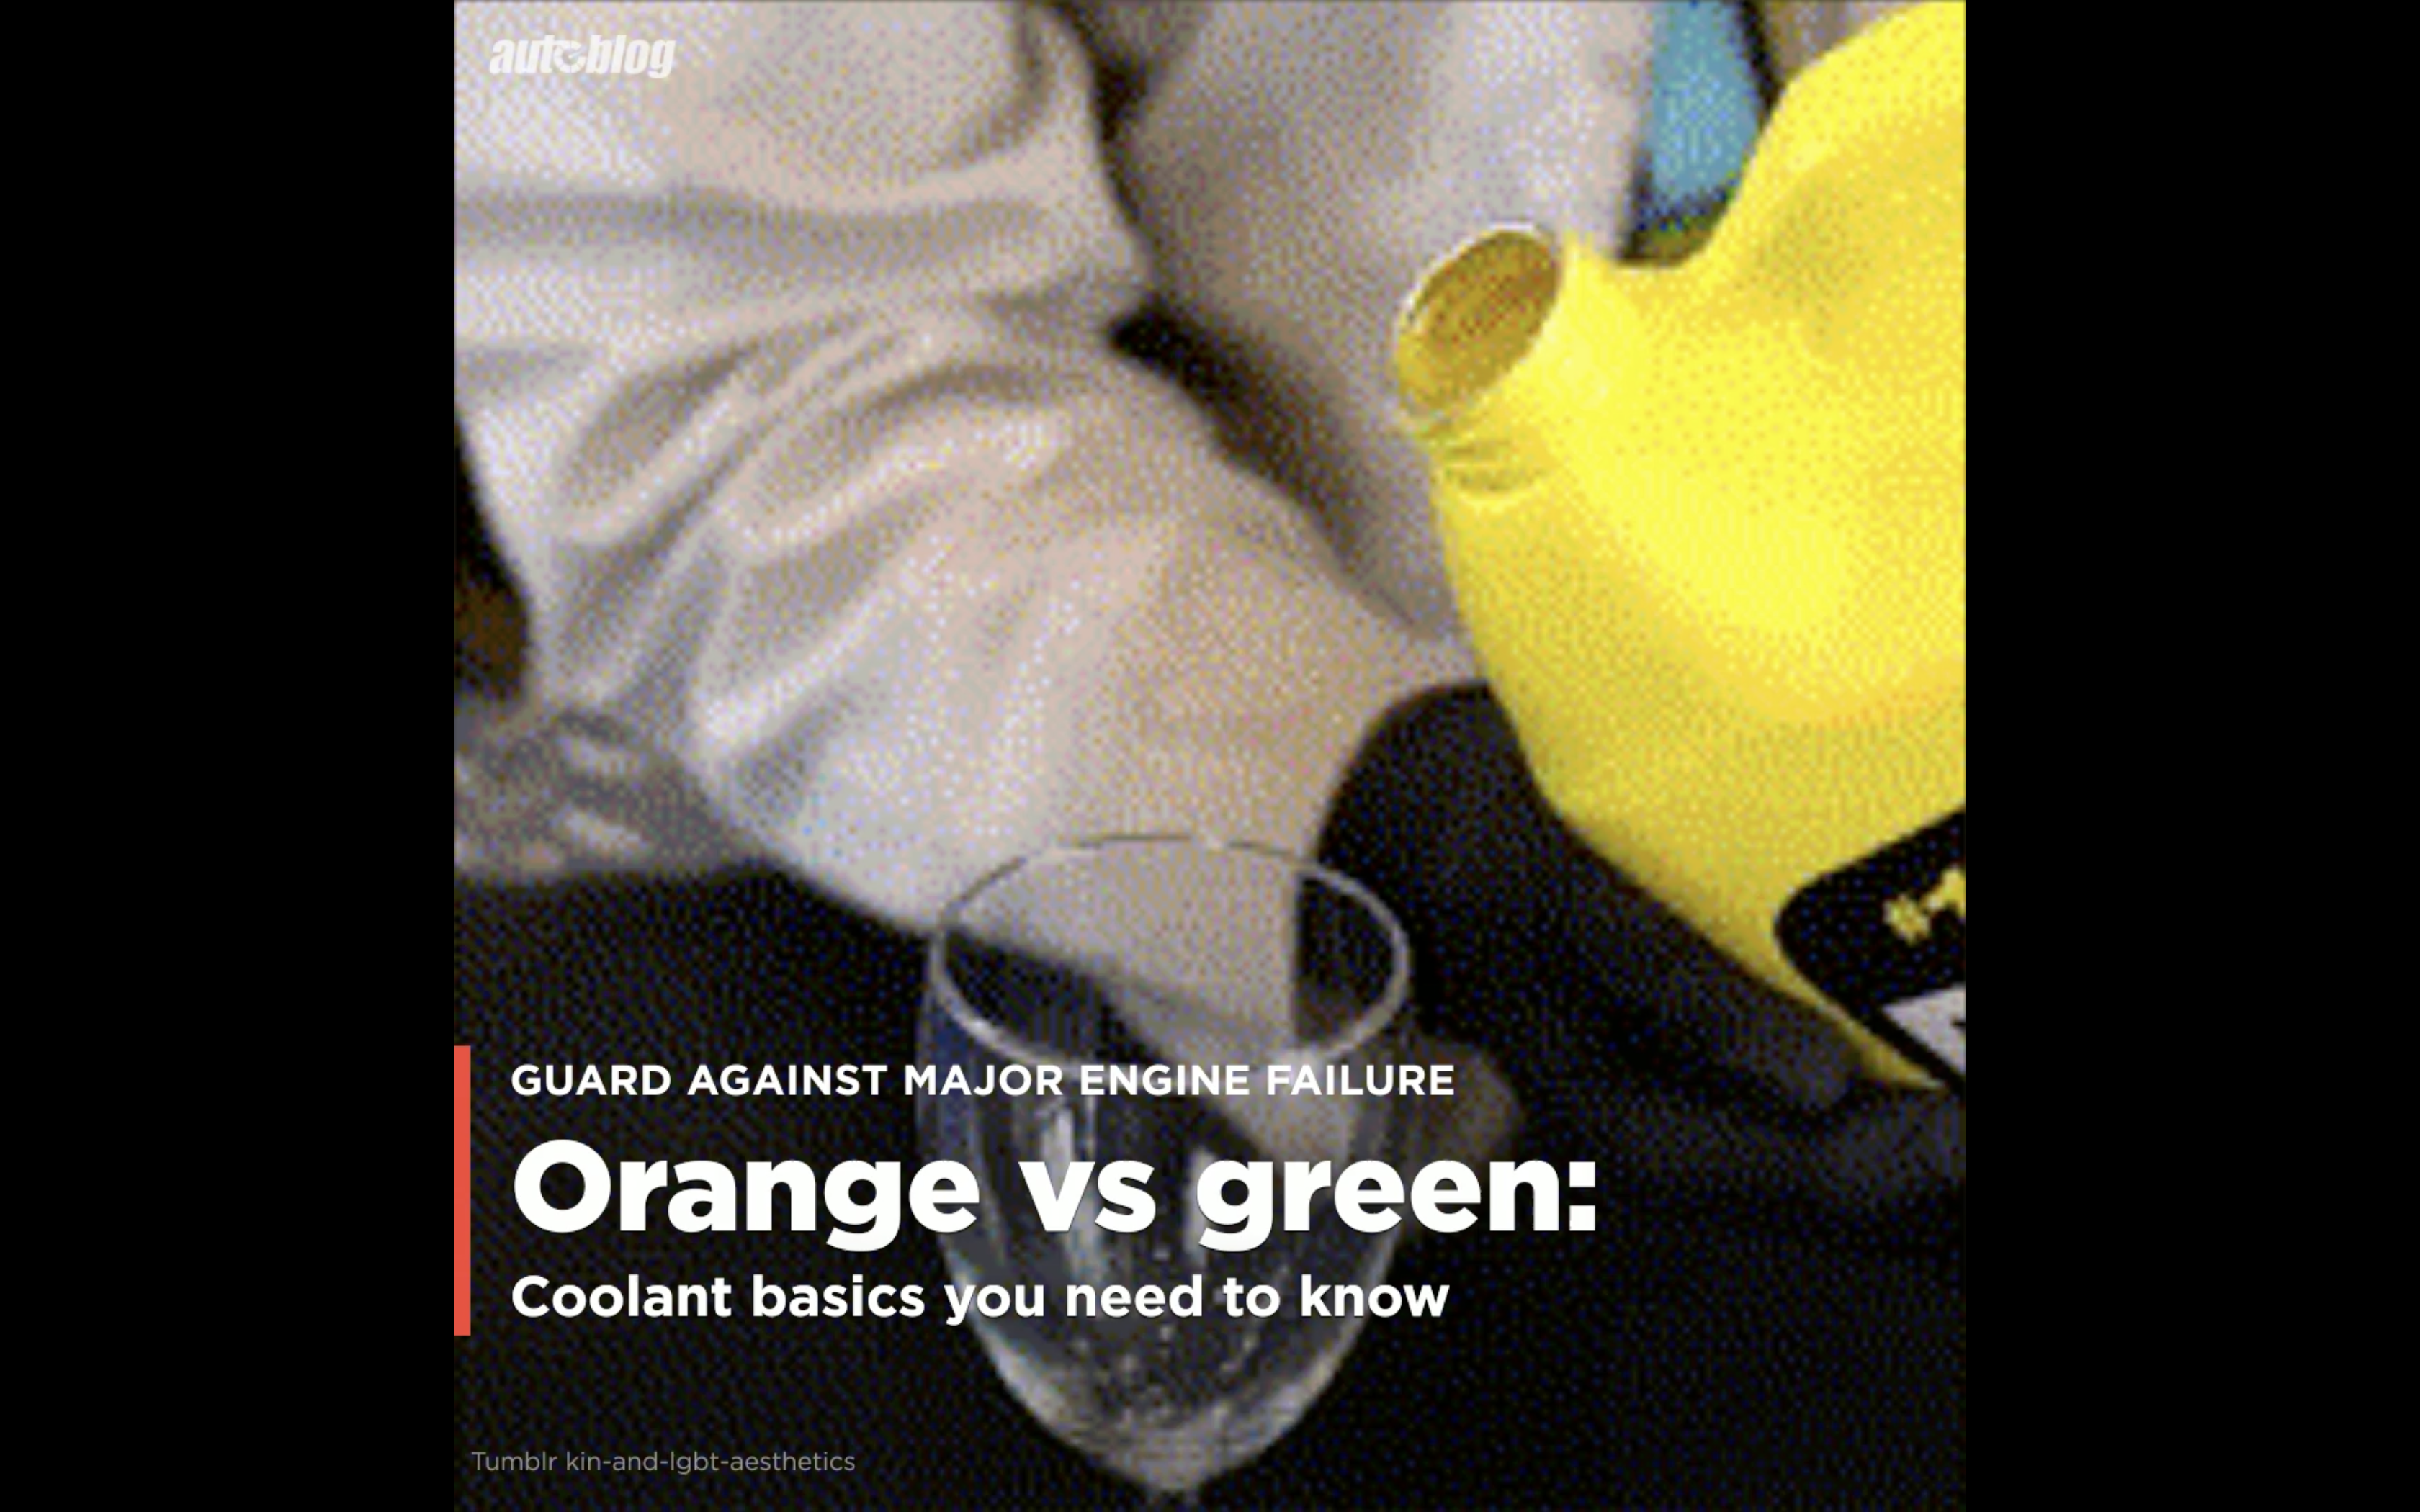 Orange Dexcool and green glycol antifreeze explained: Coolant basics -  Autoblog